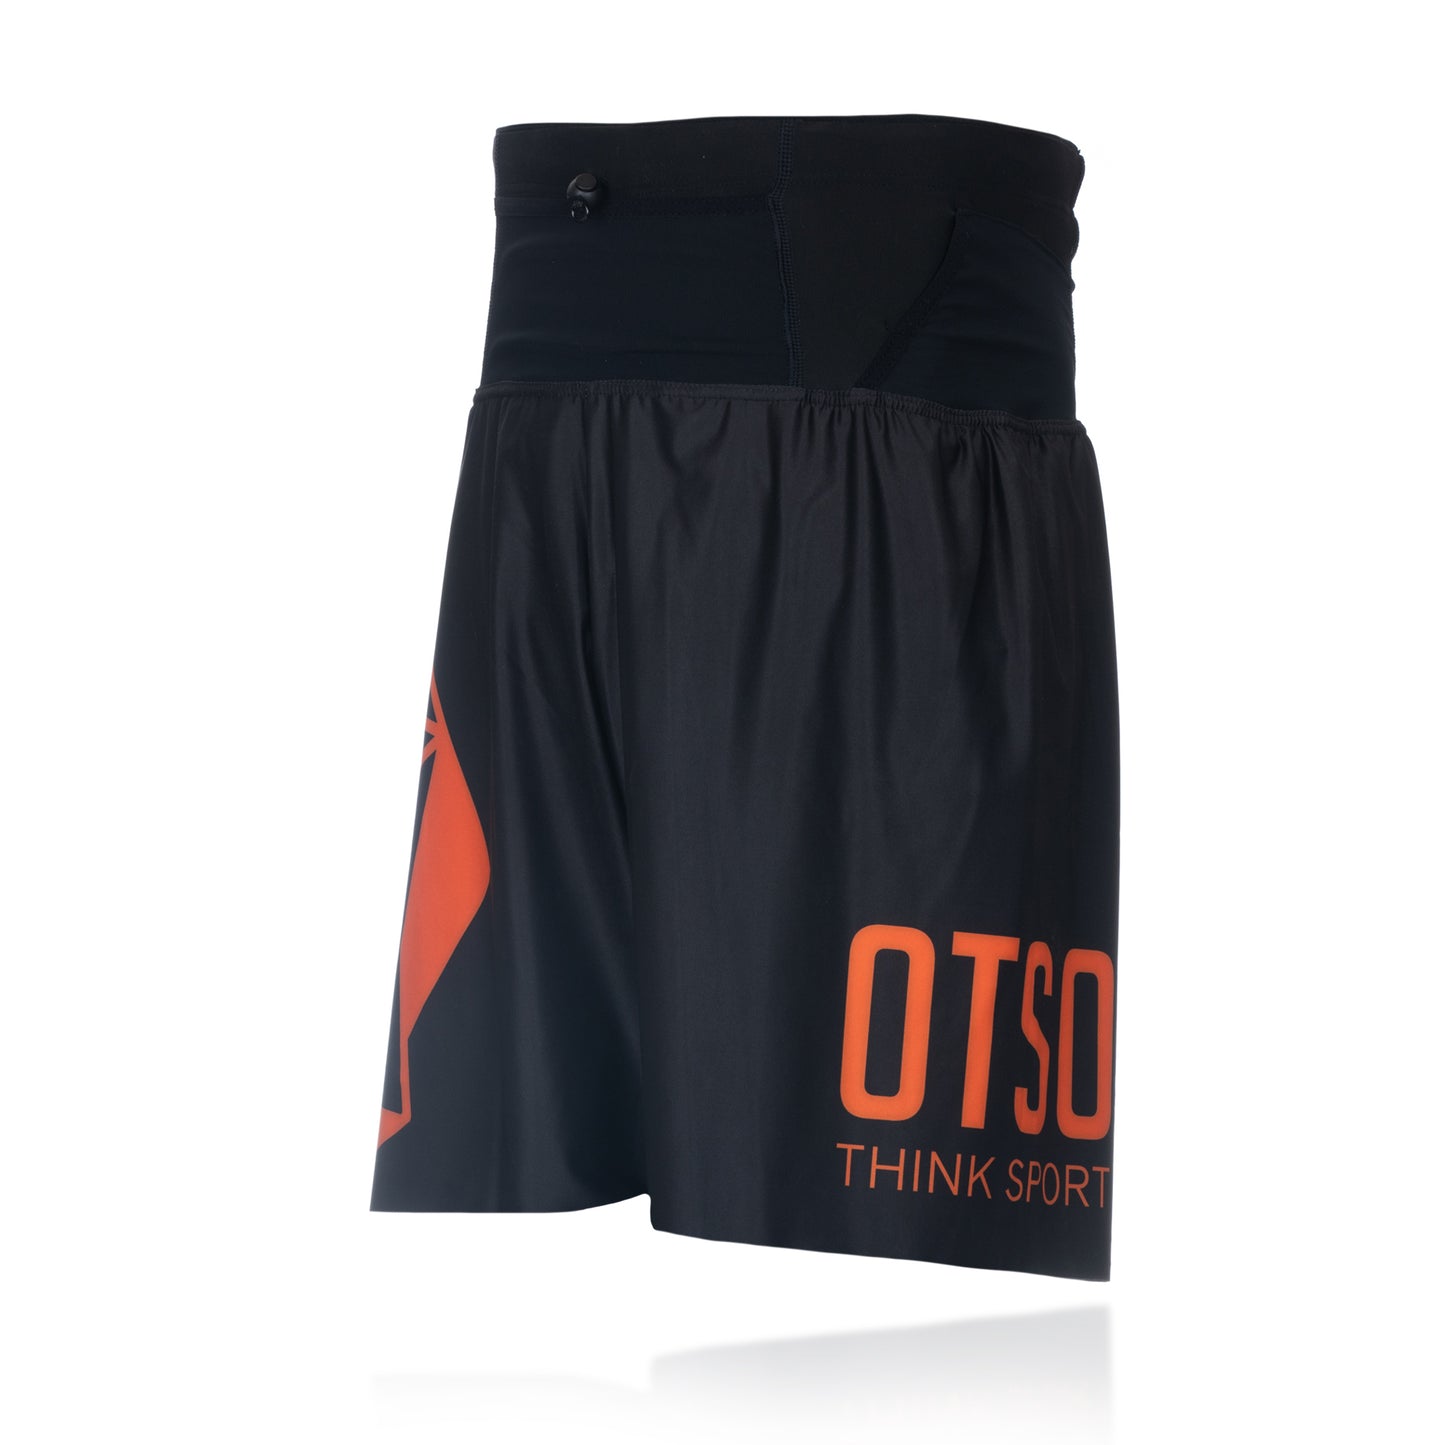 Pantalons curts - Black & Orange